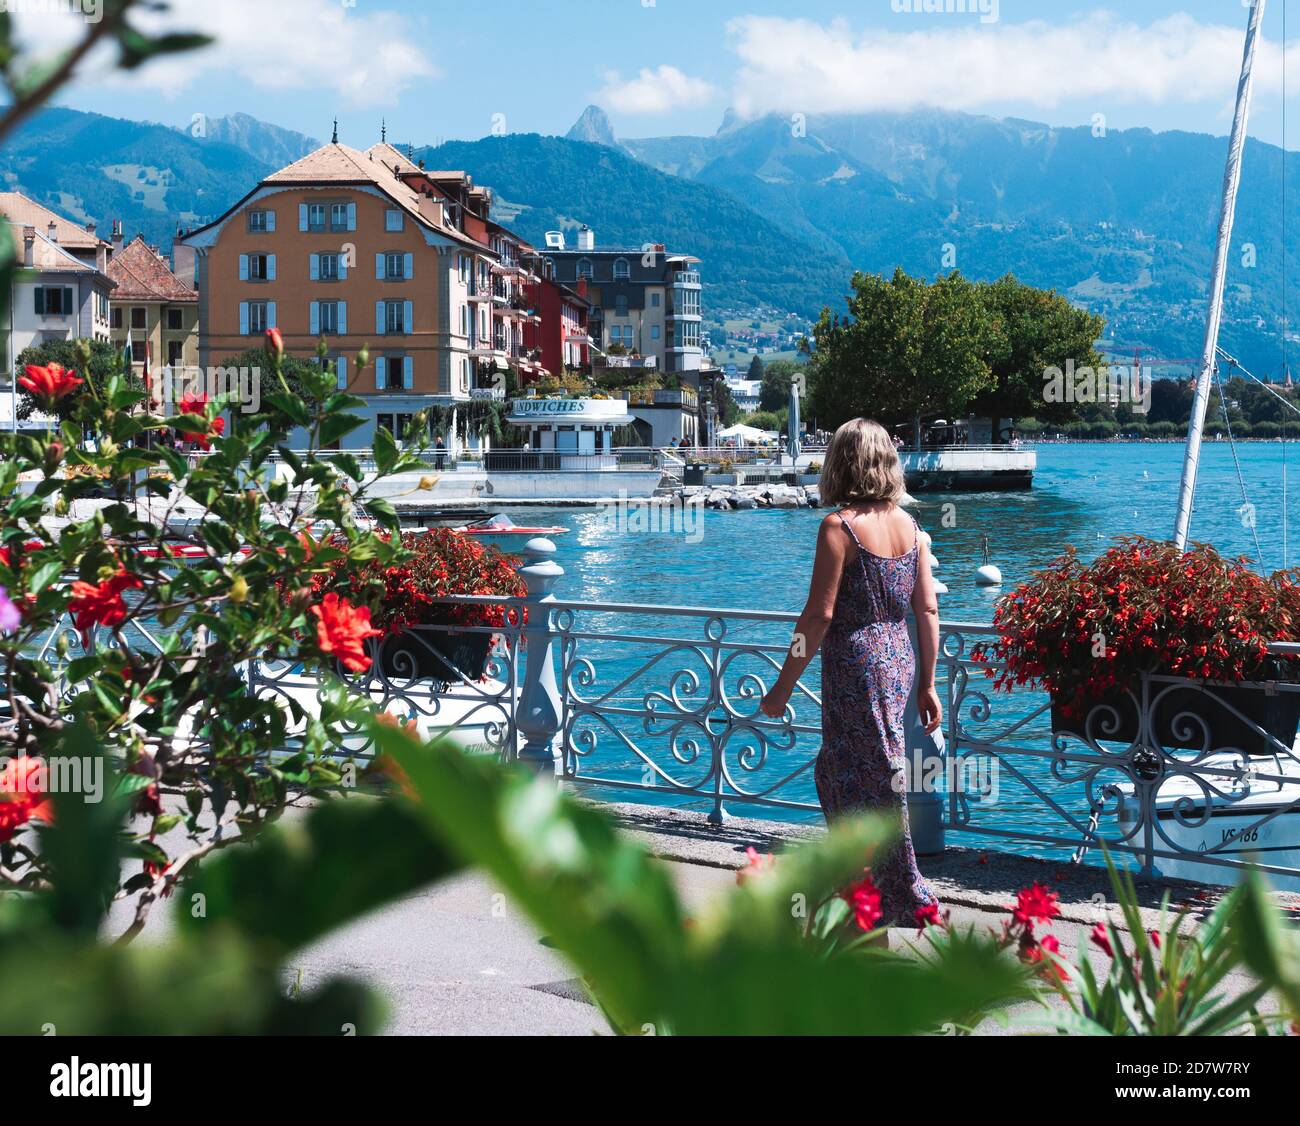 Woman with a violet dress admiring the view of Vevey and its leman lake, Switzerland. Femme admirant la vue de Vevey et de son lac léman, Suisse. Stock Photo